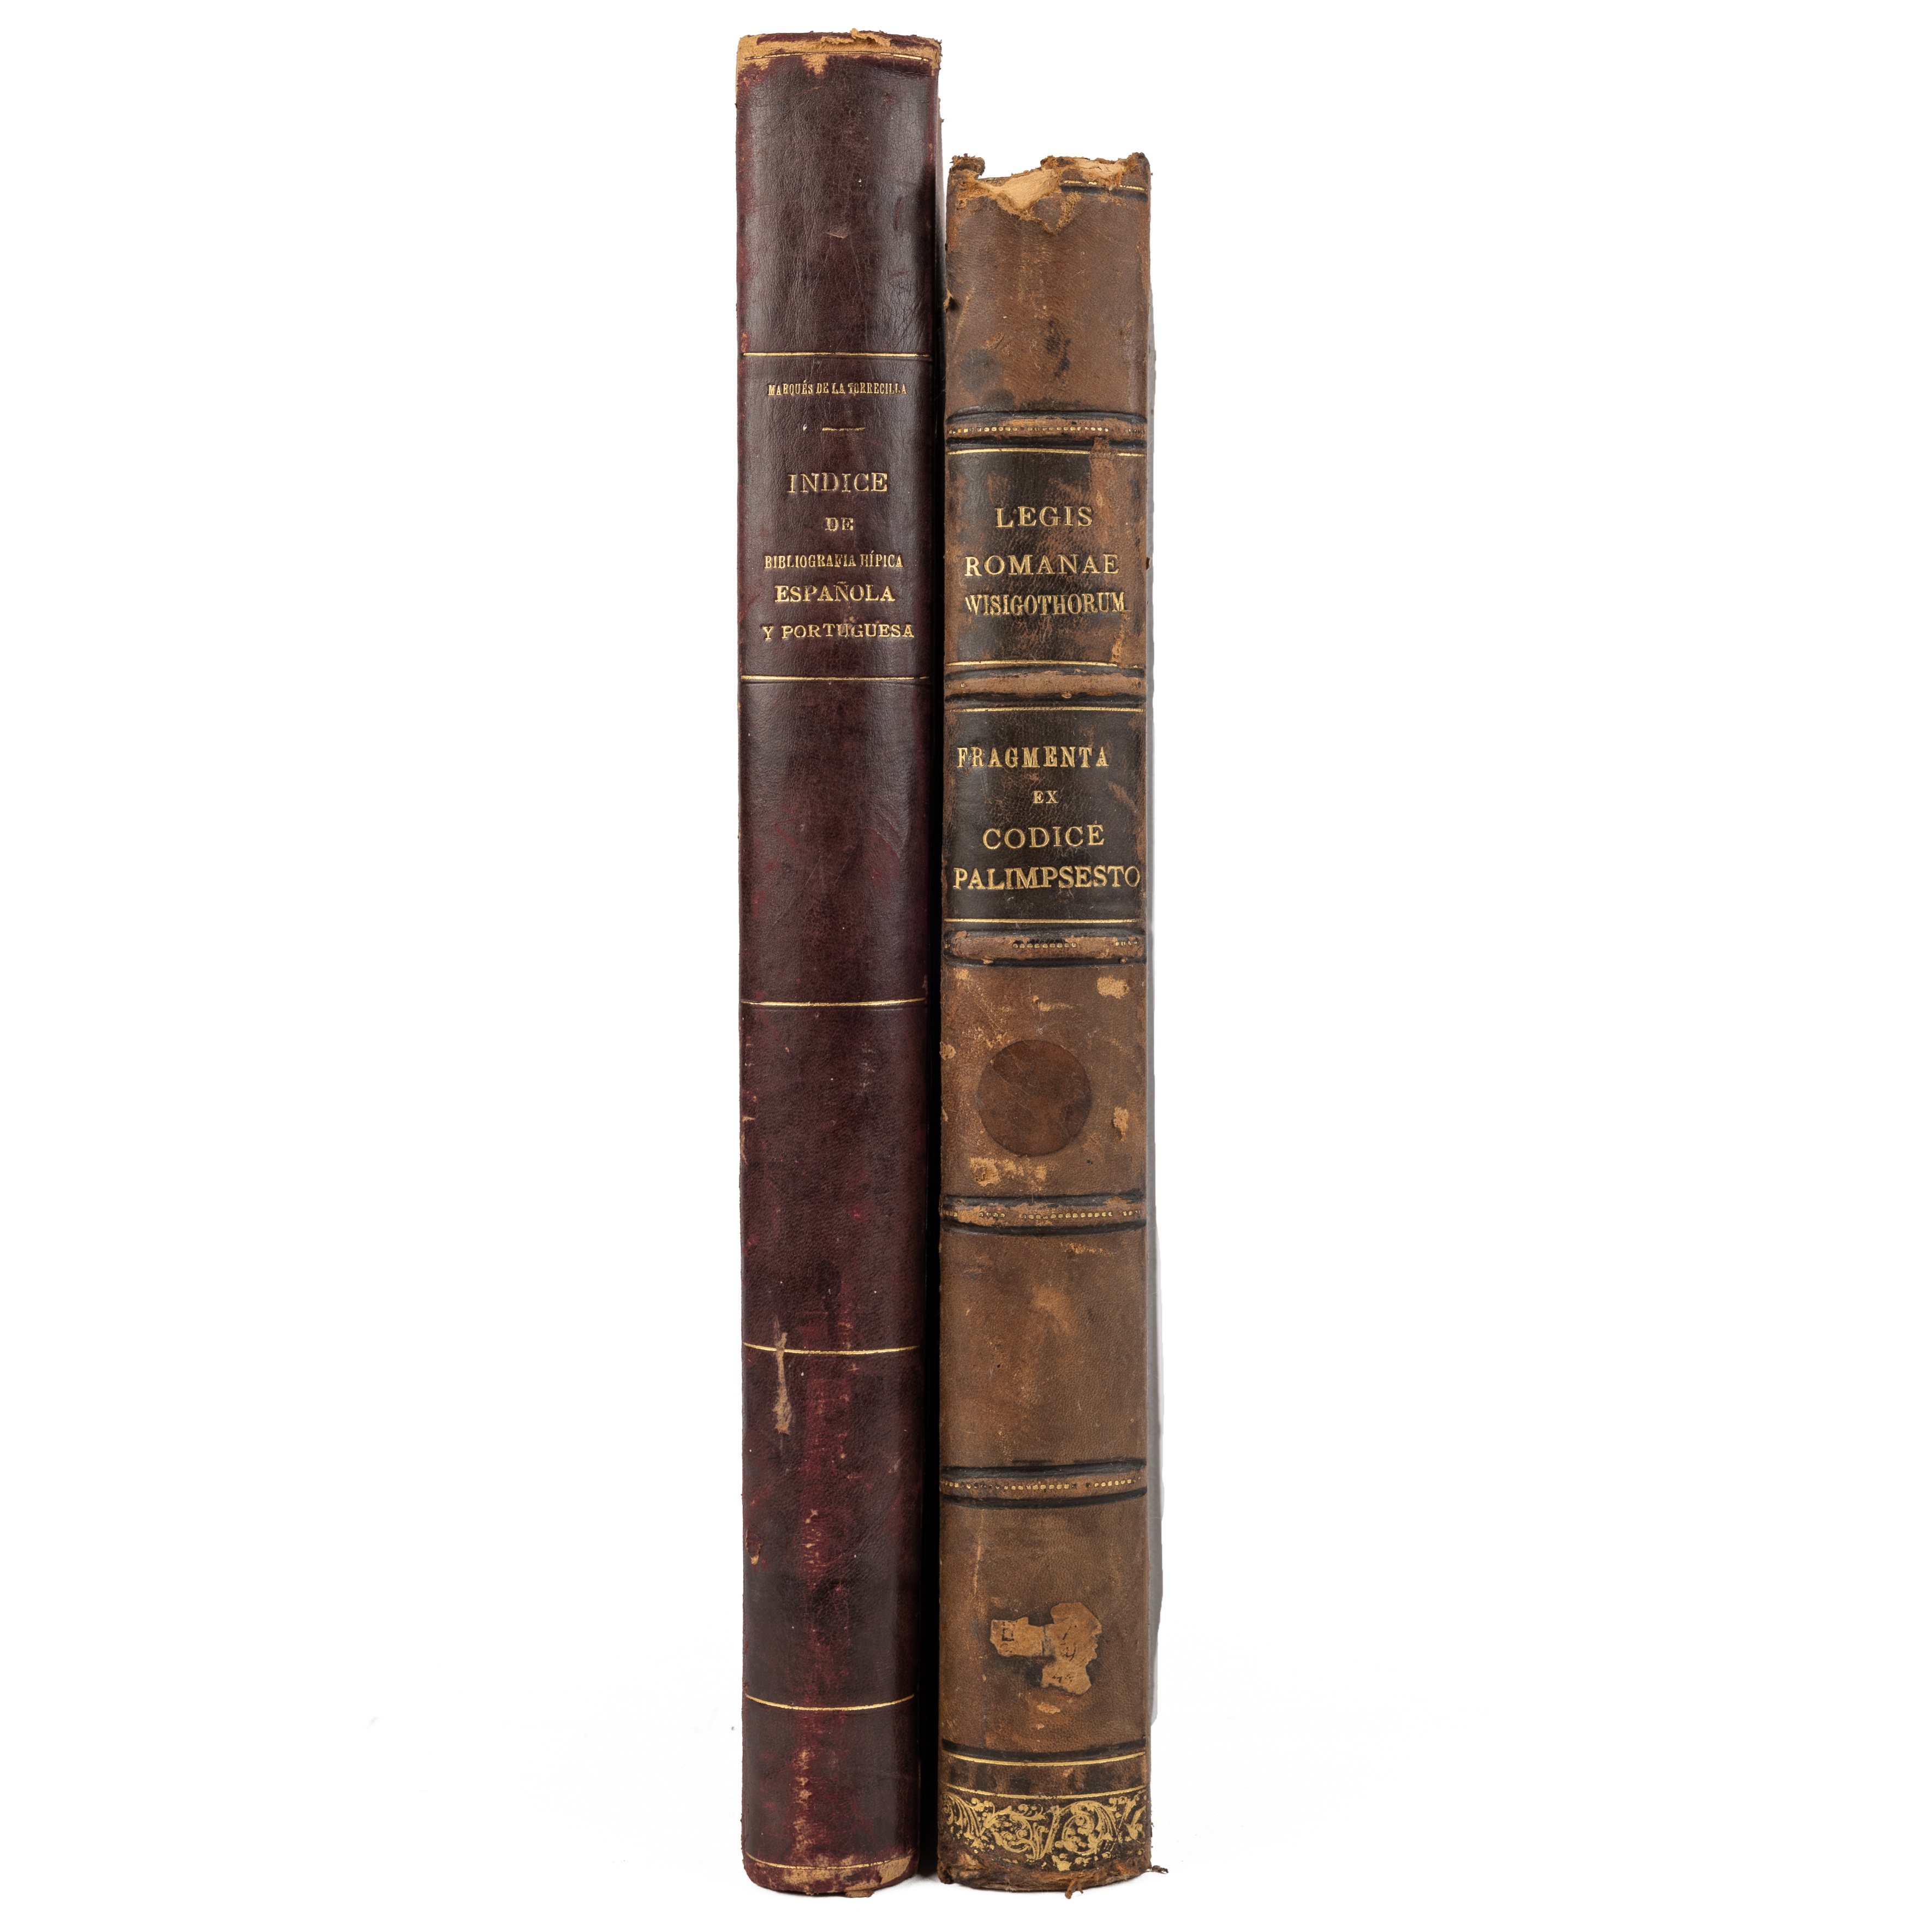 'Les Romanae Wisigothorum, Fragmenta ex codice Palimpsesto...'. Ricardum Fe. Madrid 1896. Fo. (370 x